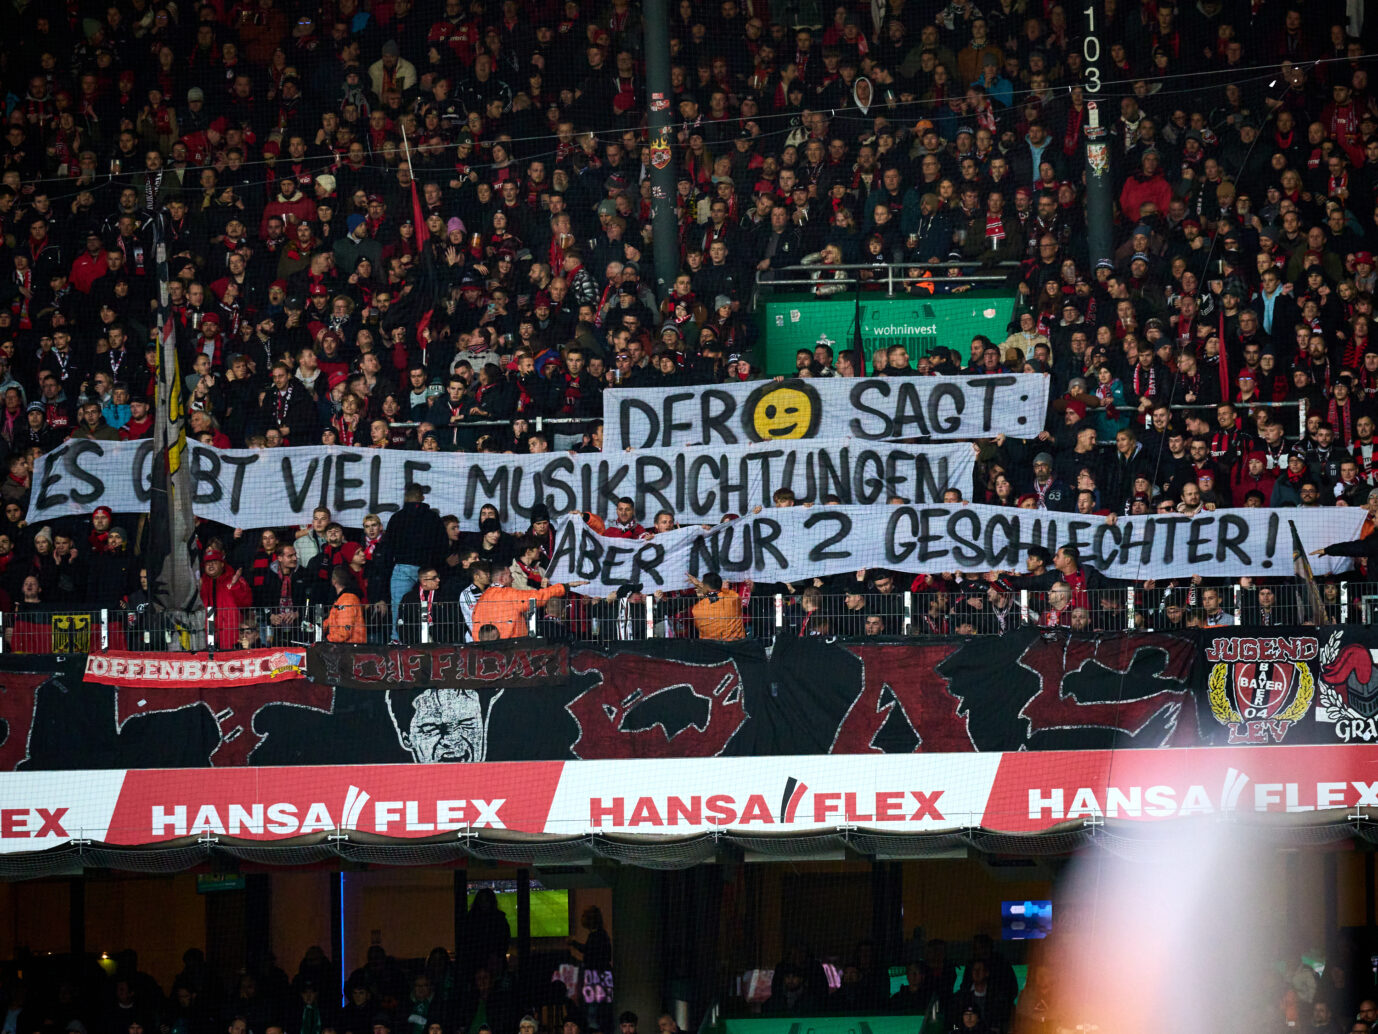 Vom DFB bestraft: Die Politik kritisiert das Banner der Fans von Bayer Leverkusen massiv. Der DFB bestraft den Klub. Foto: picture alliance / Eibner-Pressefoto | Stephanie Zerbe